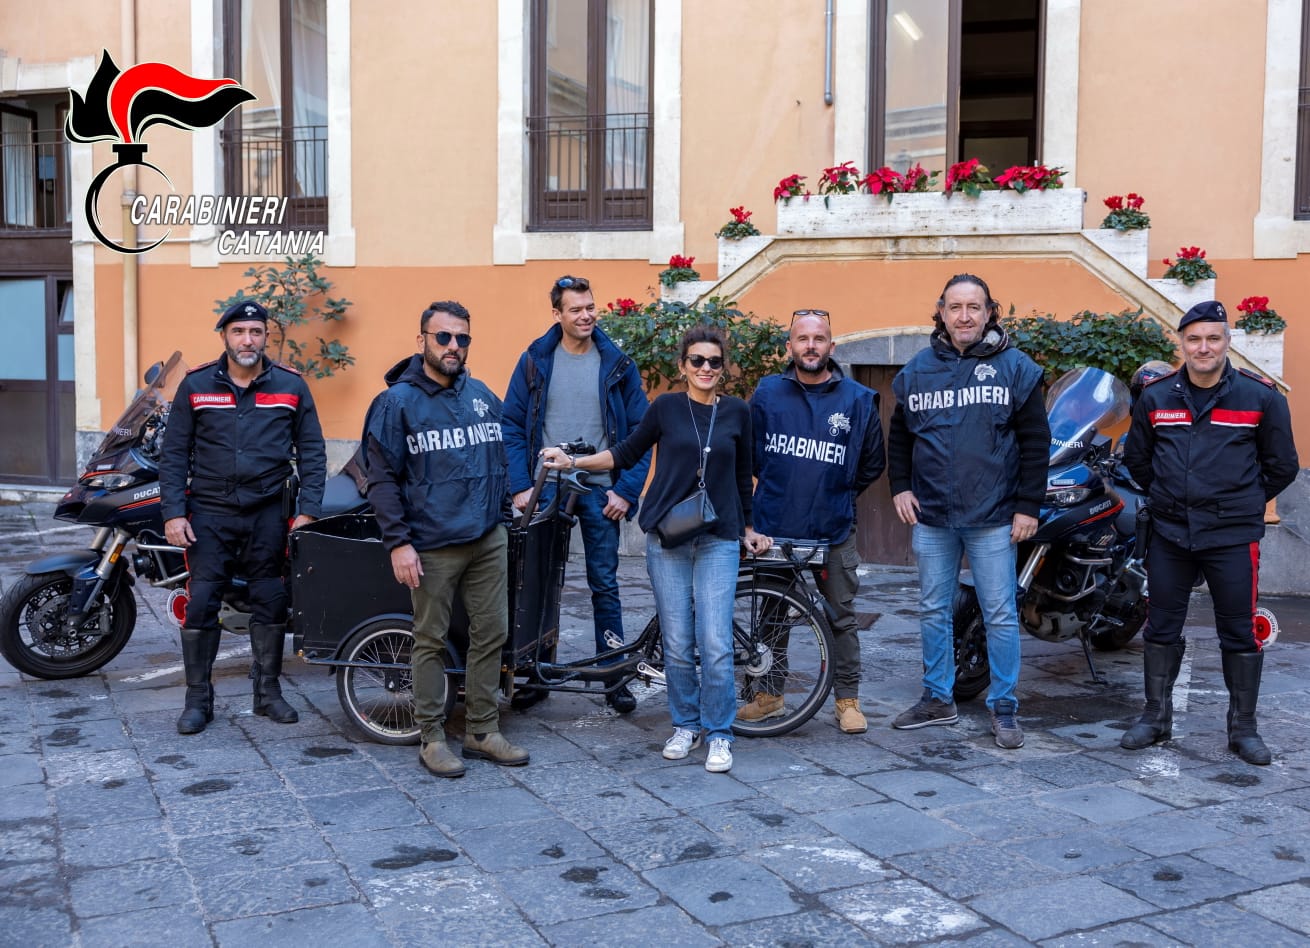 Rubano un triciclo elettrico, i Carabinieri lo ritrovano e lo restituiscono alla proprietaria